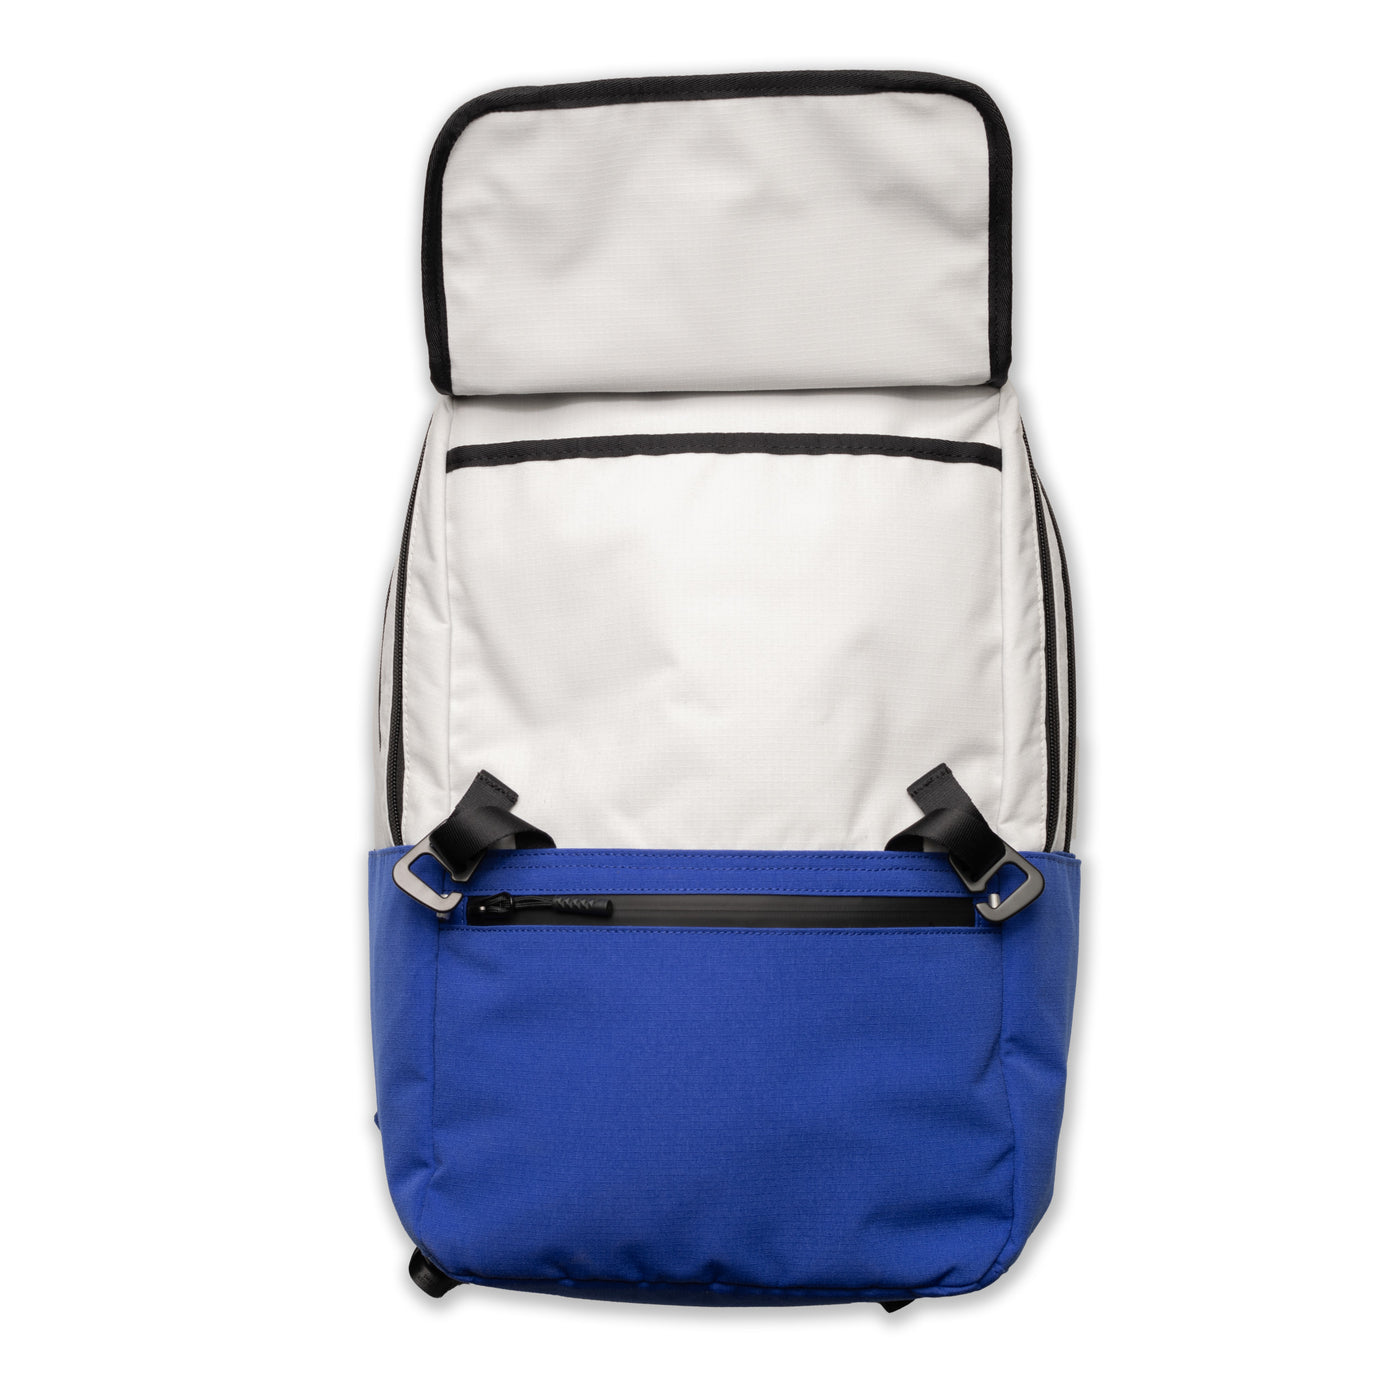 A2 Backpack - Cement/Cobalt Blue